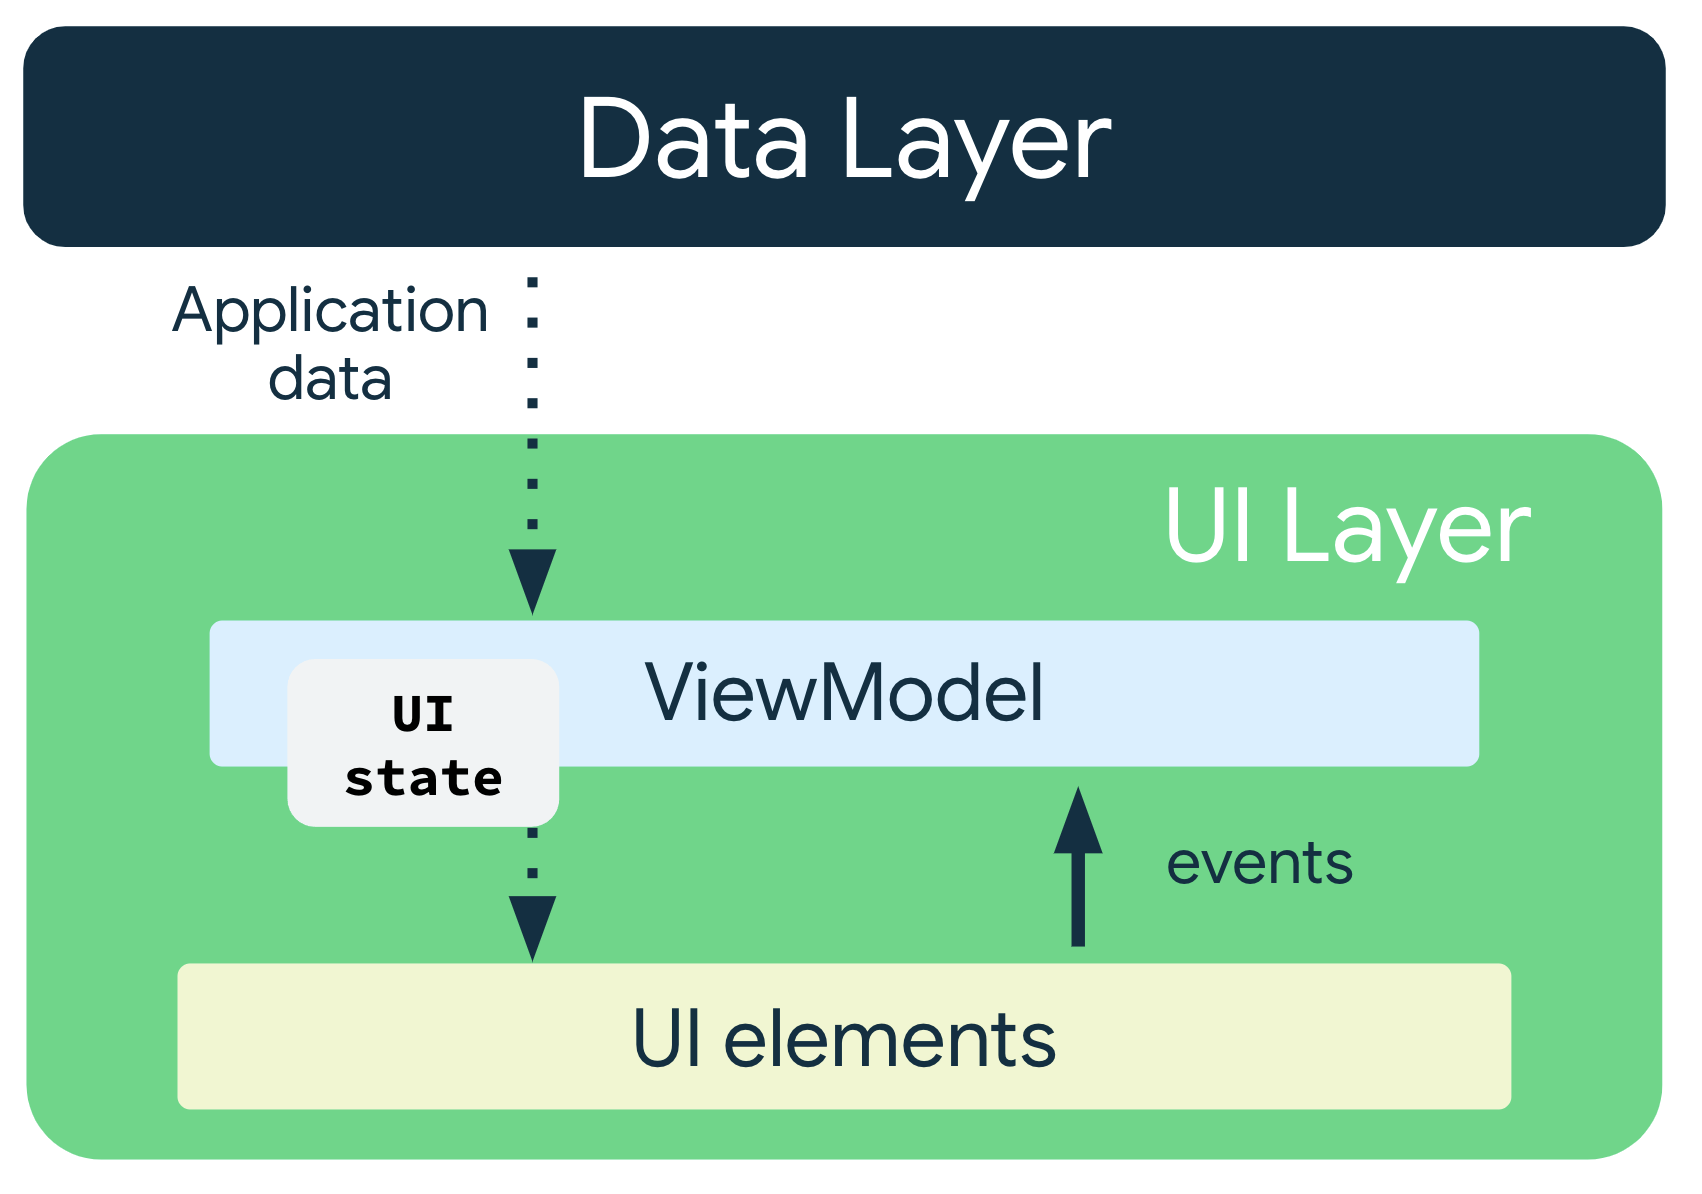 應用程式資料從資料層傳送到 ViewModel。使用者介面狀態
    會從 ViewModel 流至 UI 元素，而事件則從 UI 元素
    流回 ViewModel。